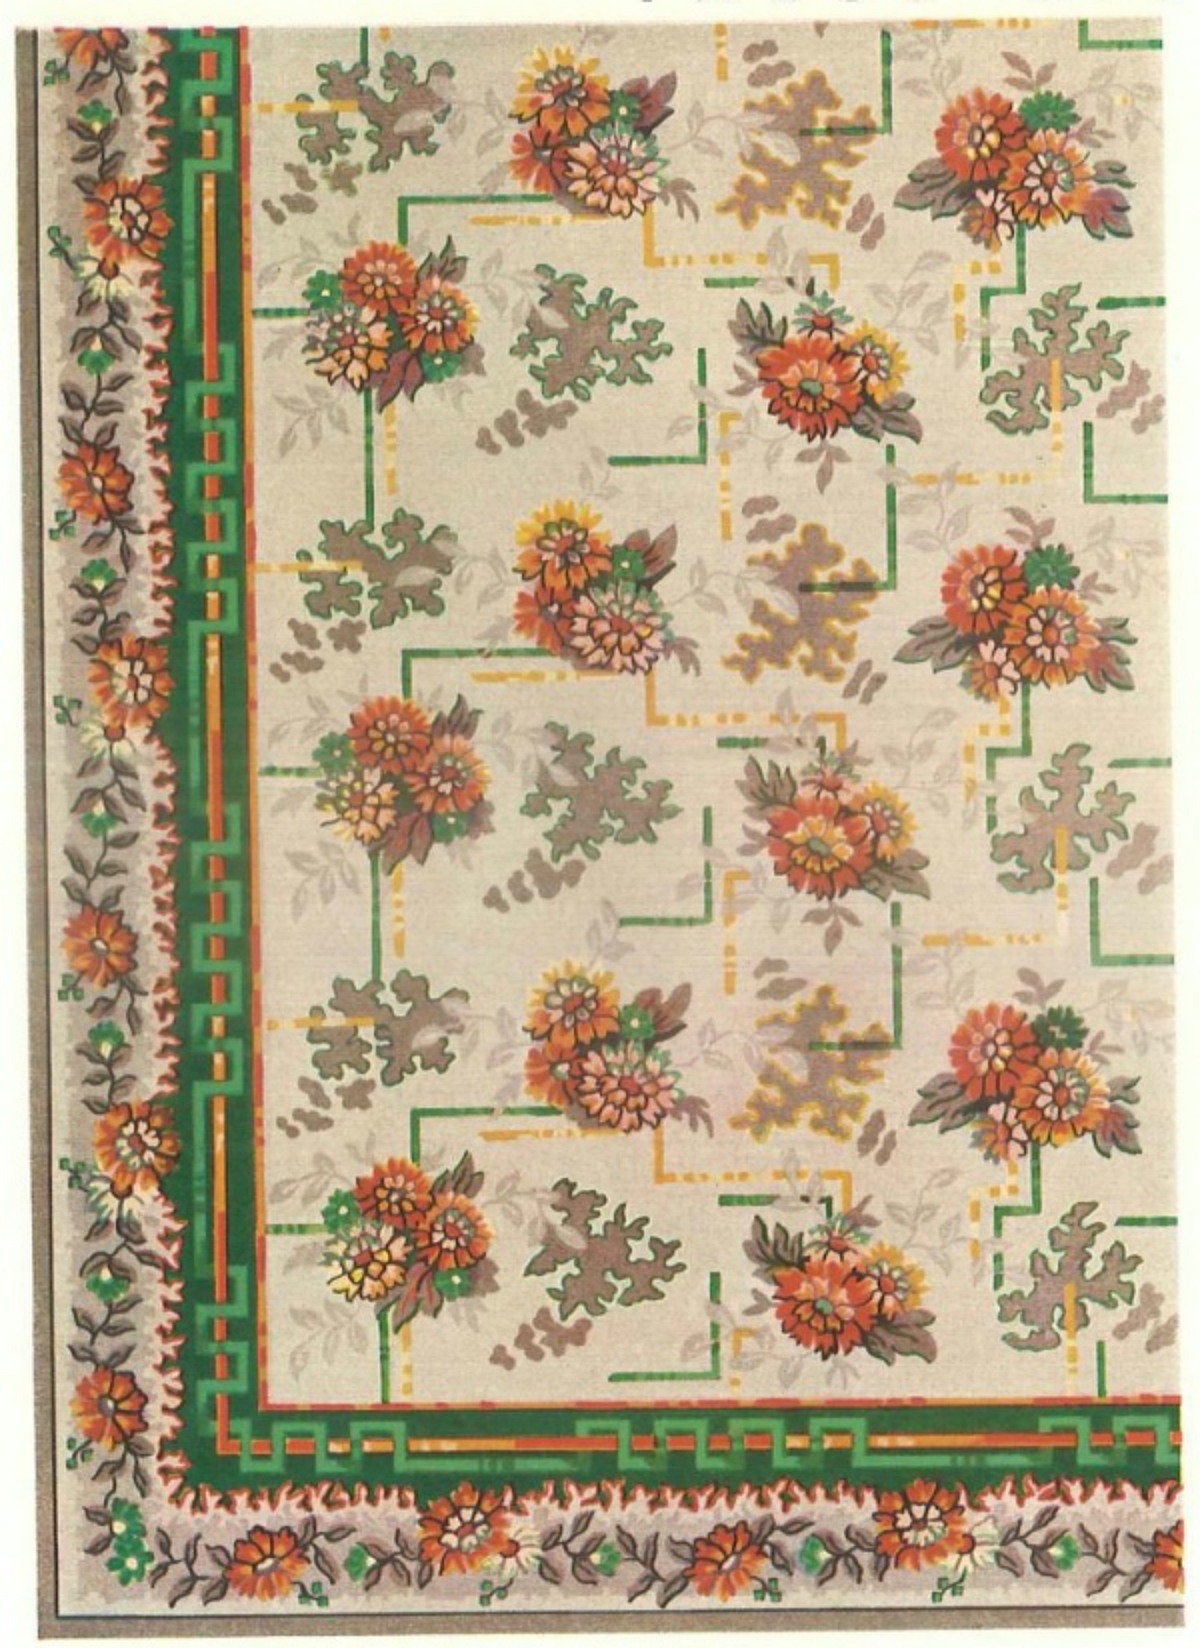 1930s linoleum "rug" pattern